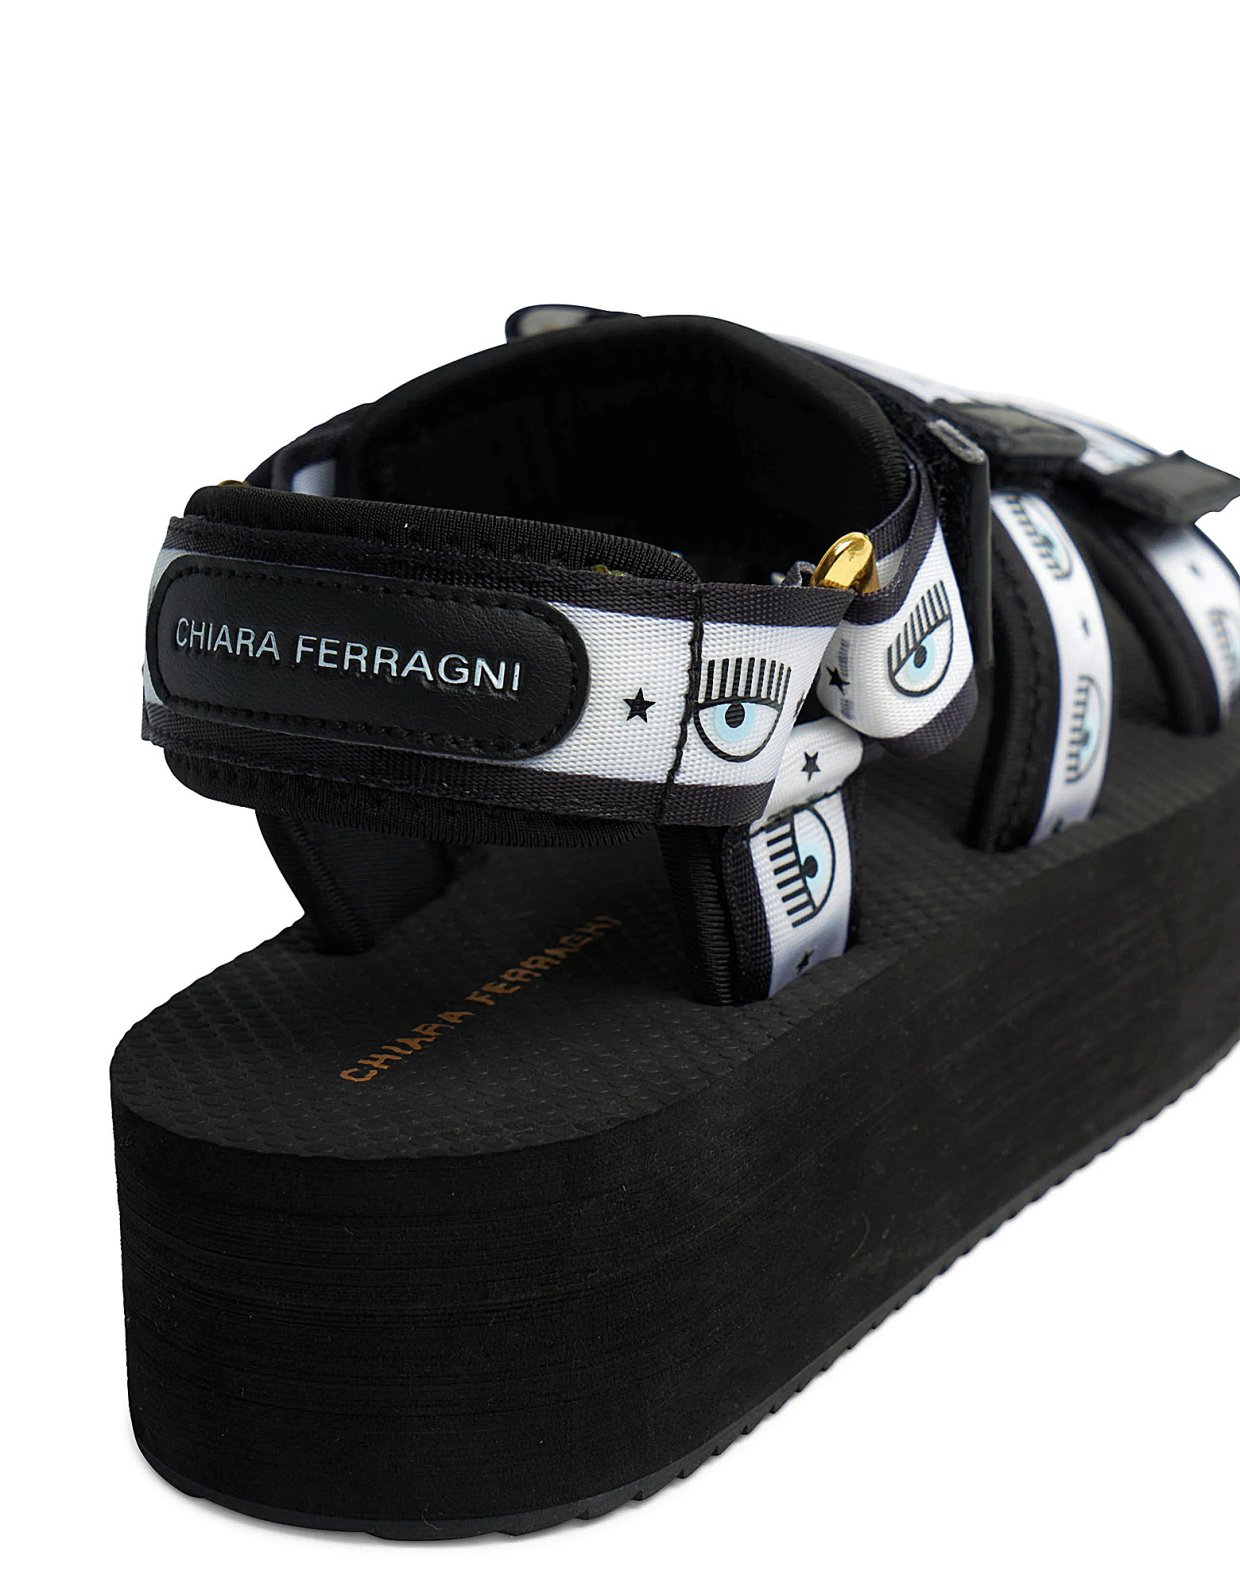 Chiara Ferragni Logomania sandal black